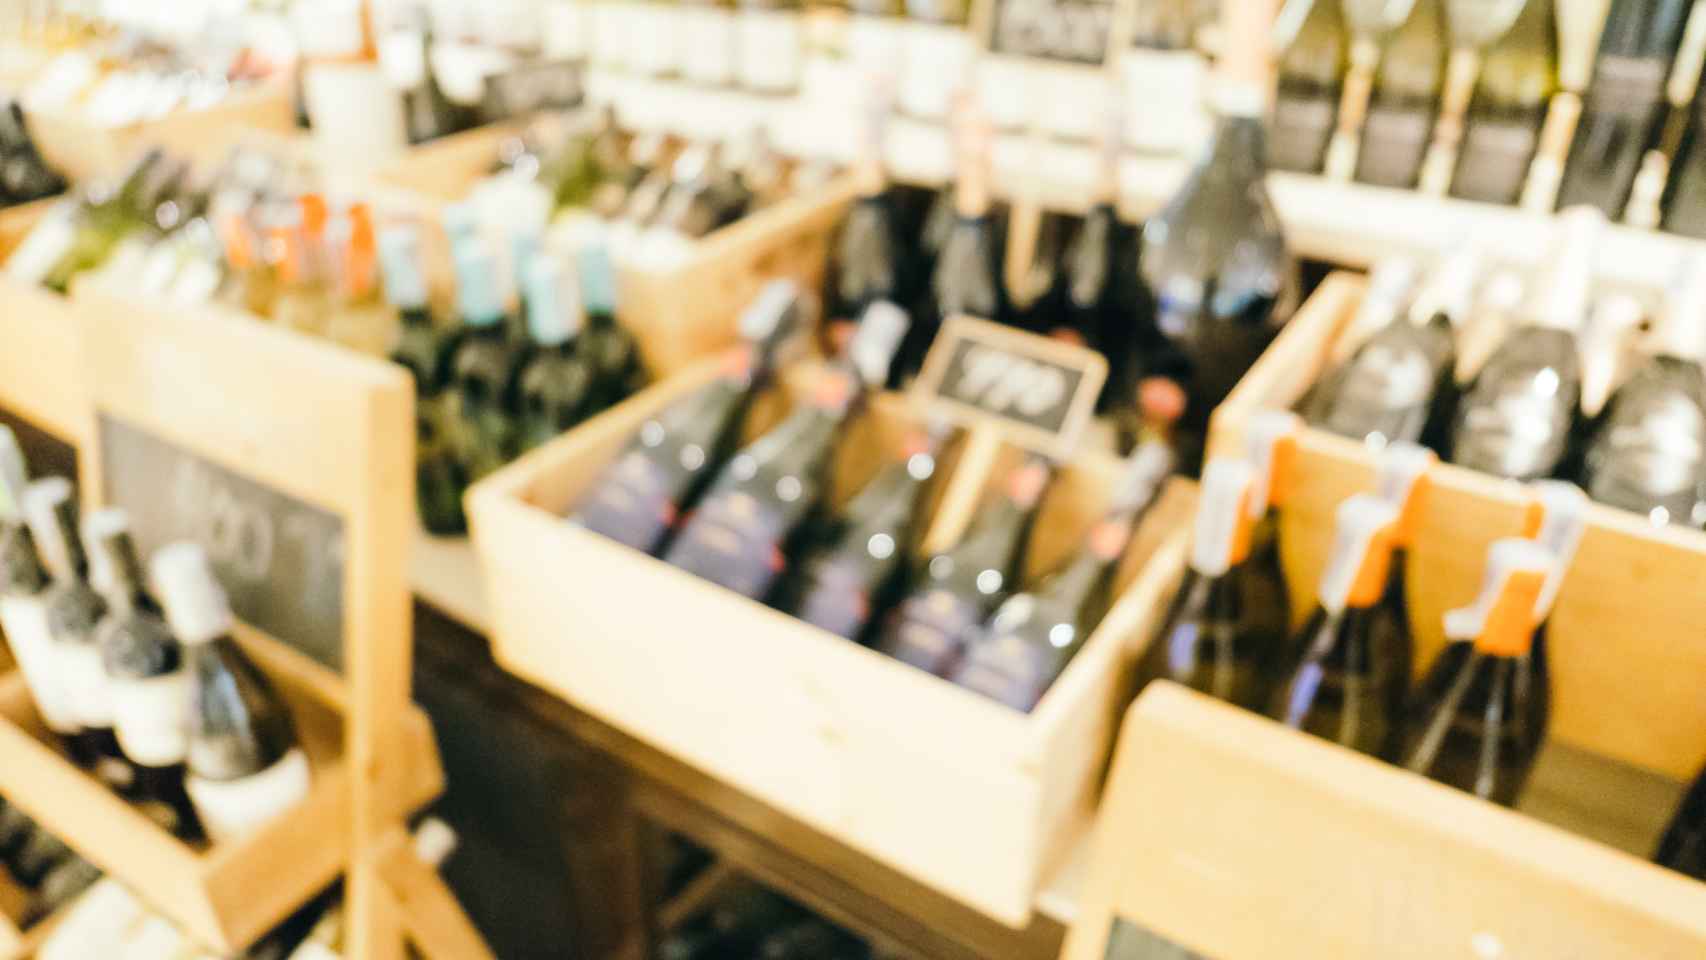 El supermercado premiado por la calidad de sus vinos: 68 medallas por menos de 6,5 €